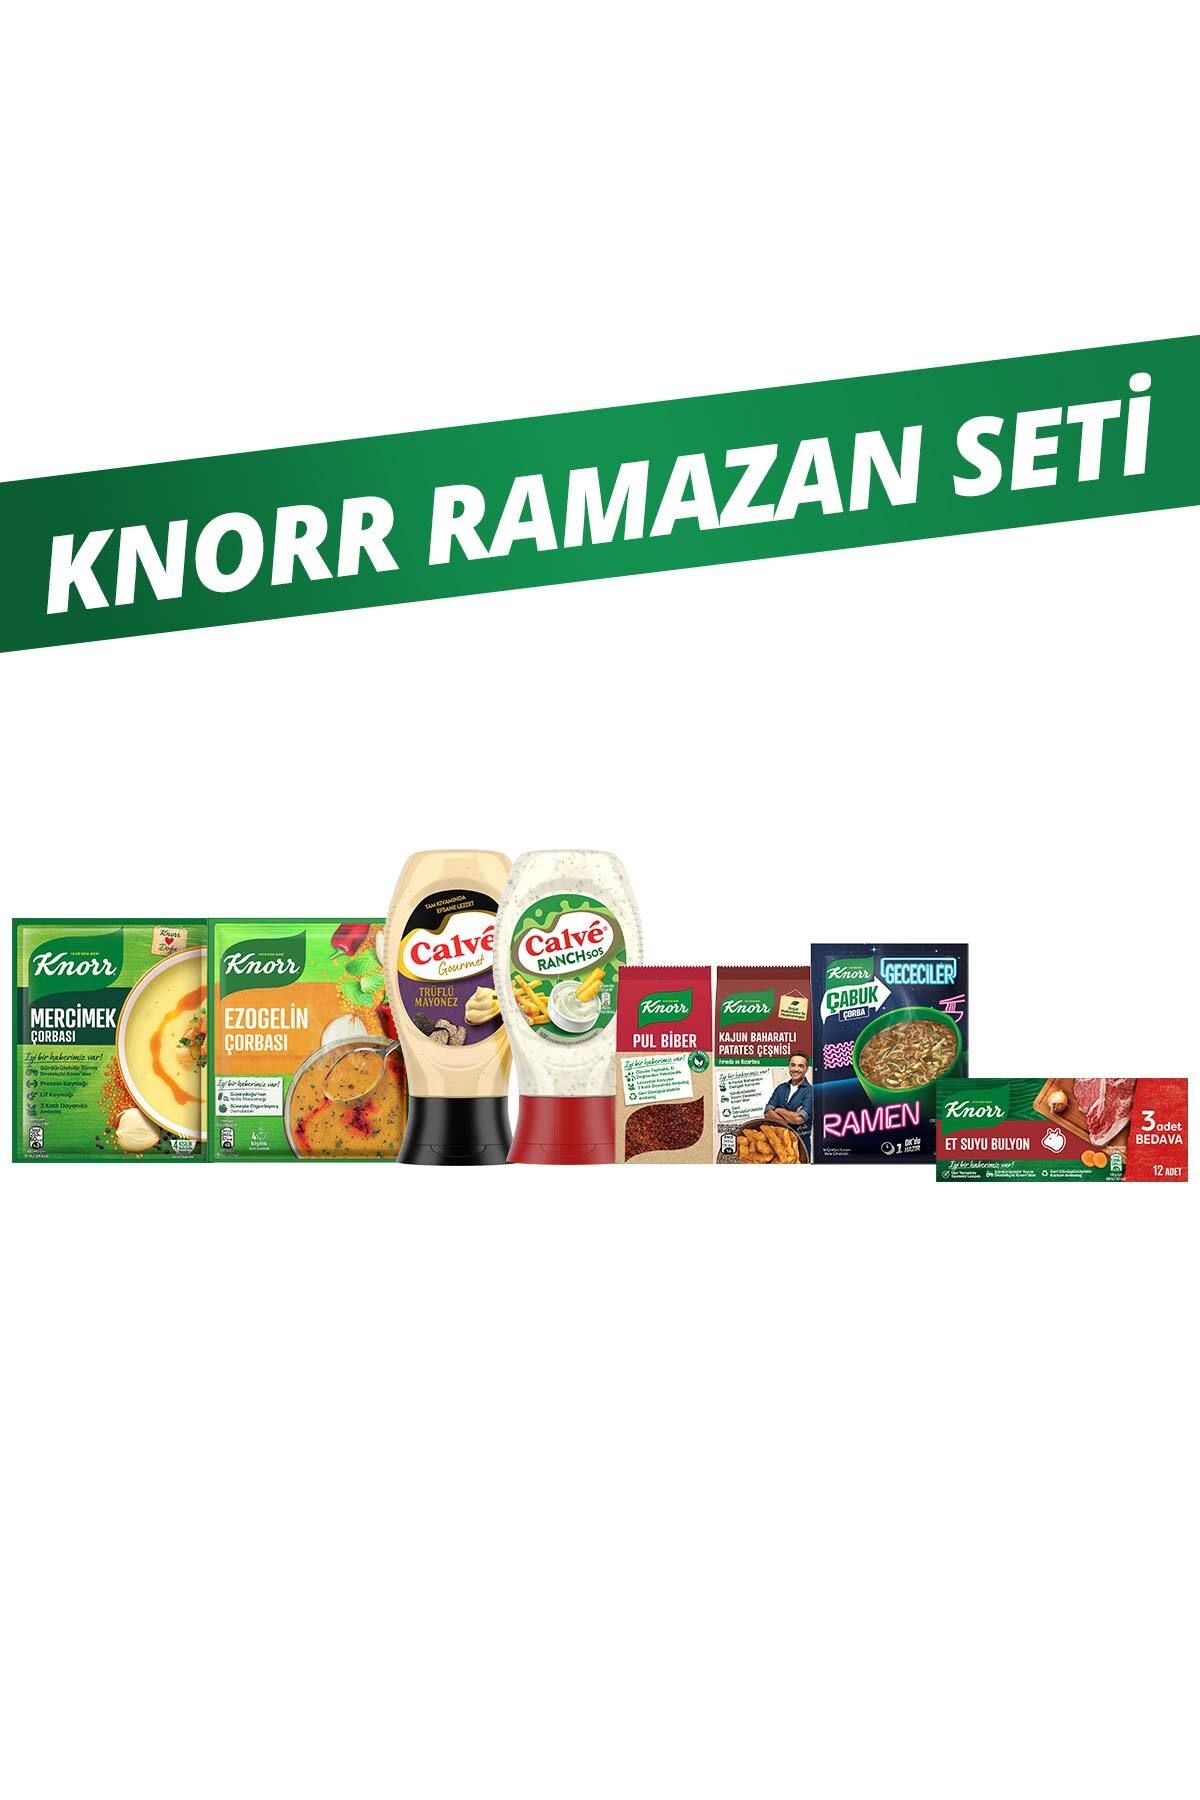 Knorr Ramazan Paketi Çorba Çeşni Baharat Calve Sos